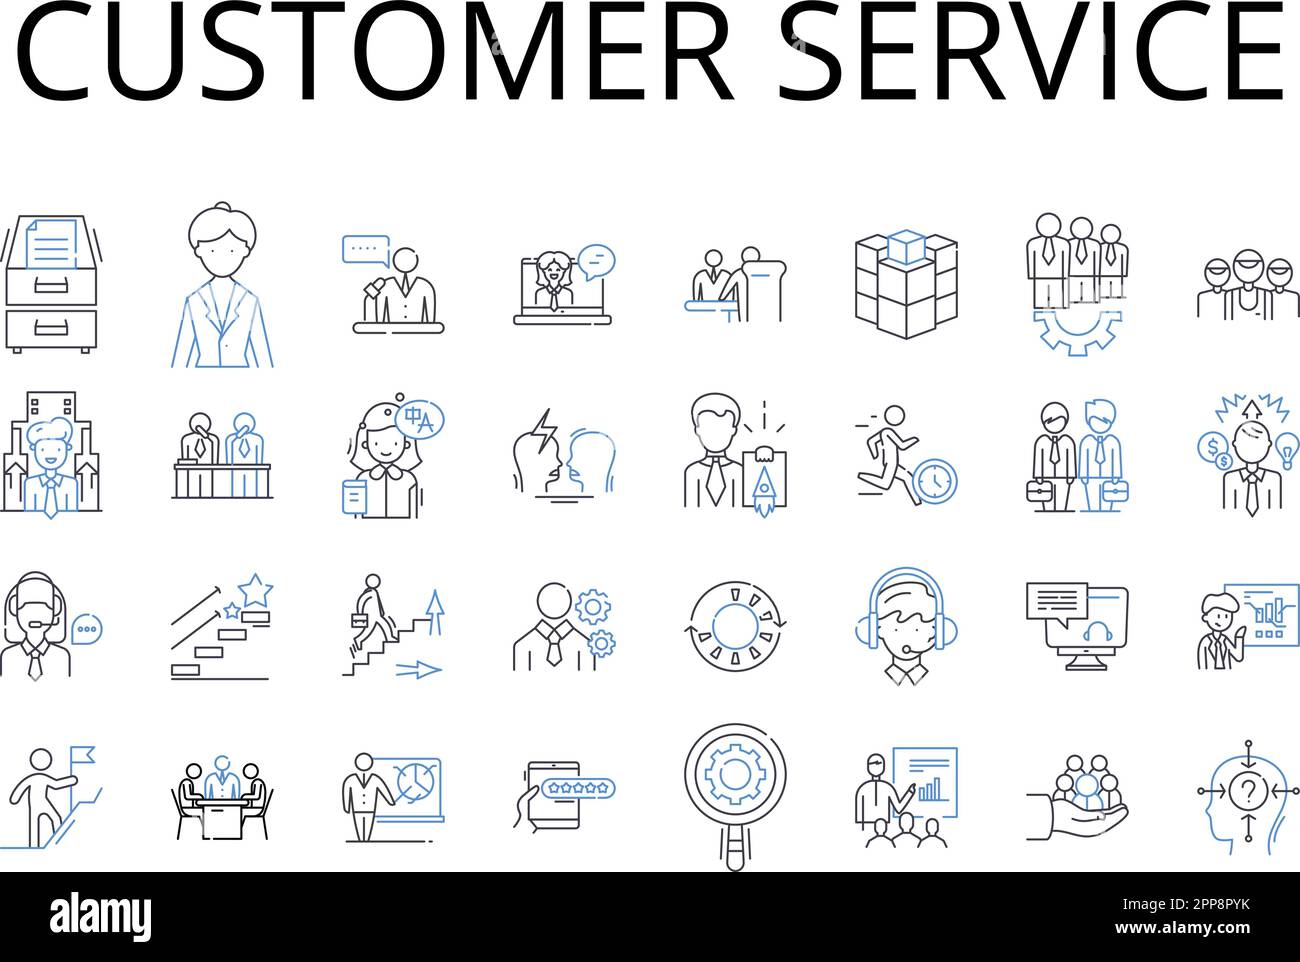 Raccolta delle icone della linea del servizio clienti. Relazioni con i clienti, soddisfazione dei clienti, assistenza clienti, esperienza clienti, assistenza clienti, Acquirente Illustrazione Vettoriale